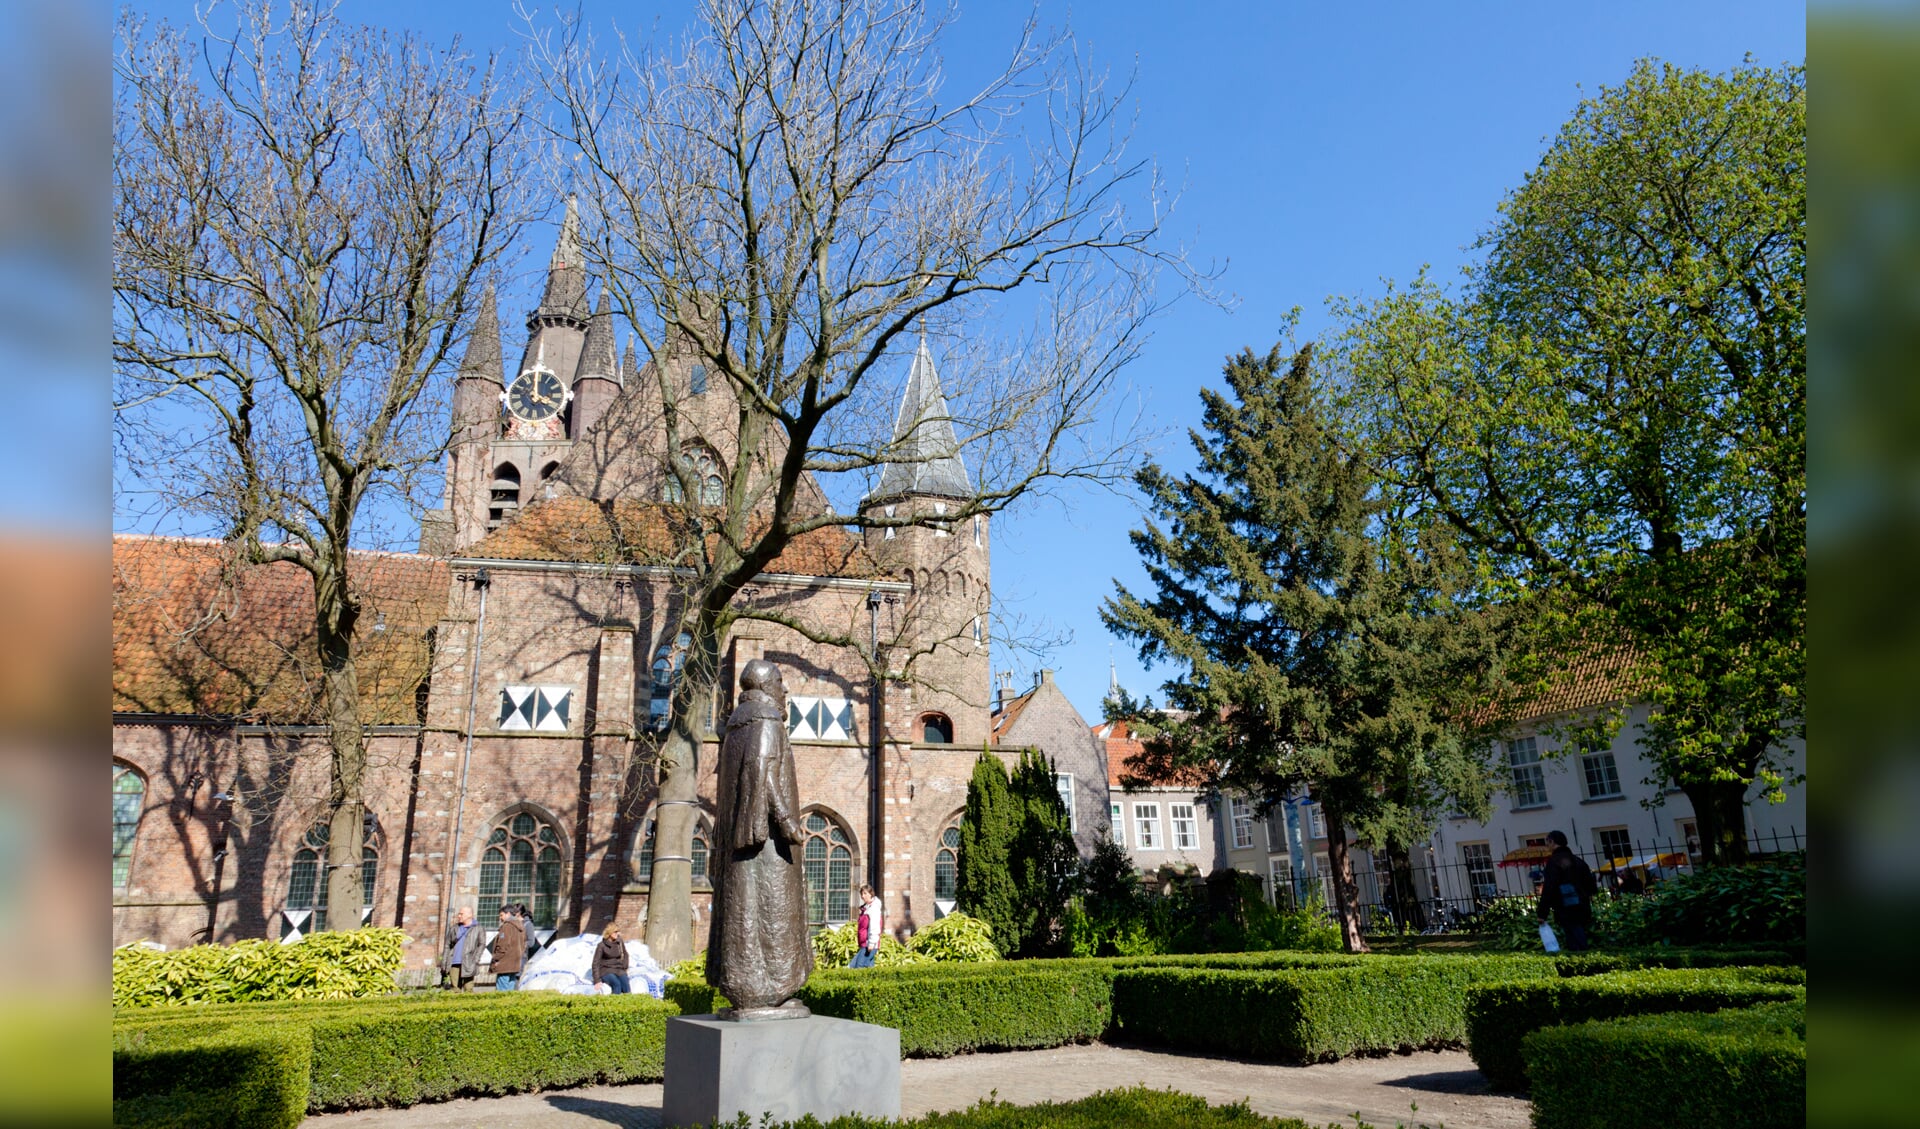 Museum Prinsenhof Delft is dusdanig oud dat moet worden geïnvesteerd in de beveiliging. 